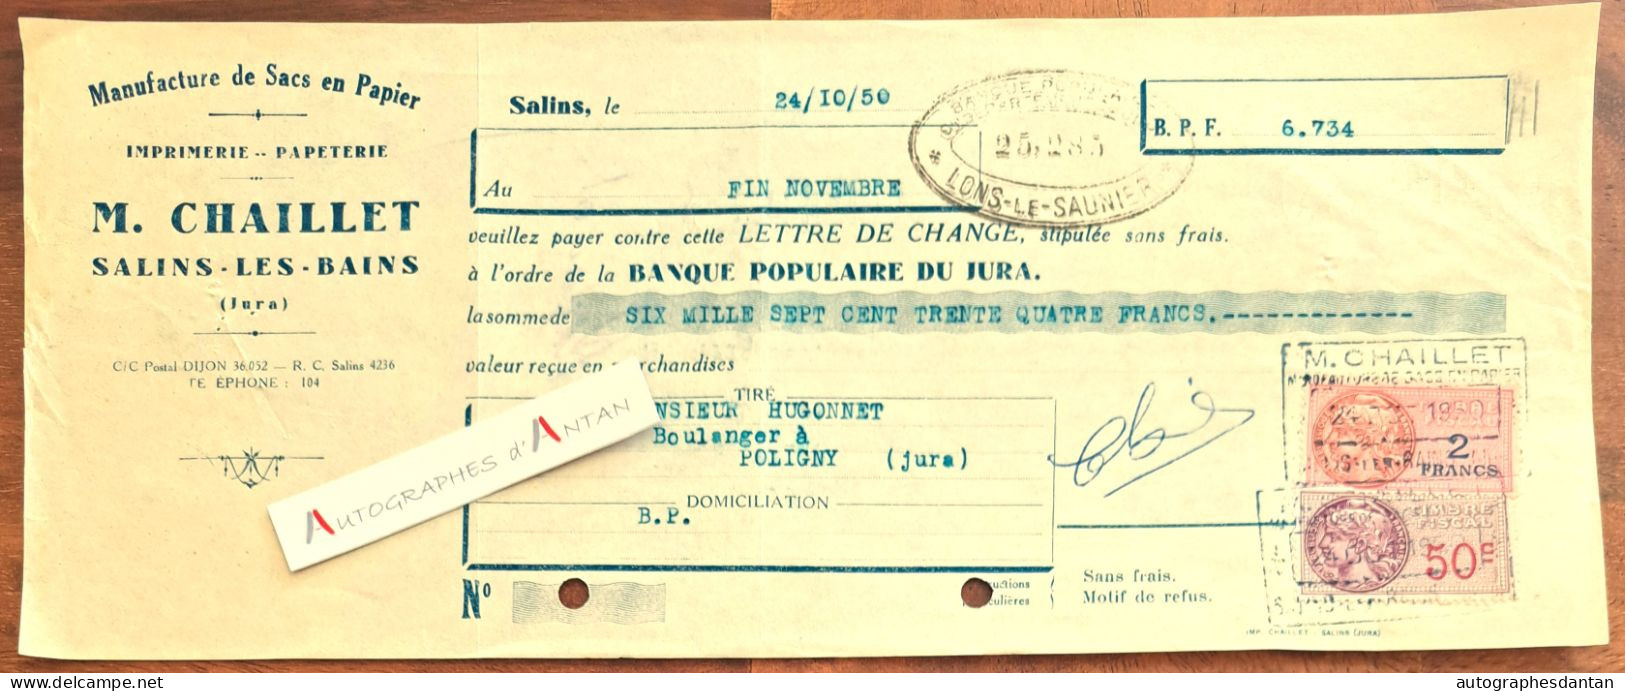 ● SALINS 1950 (Jura) M. CHAILLET Sacs En Papier Imprimerie Papeterie - Lettre De Change à M. Hugonnet à Poligny - Lettres De Change